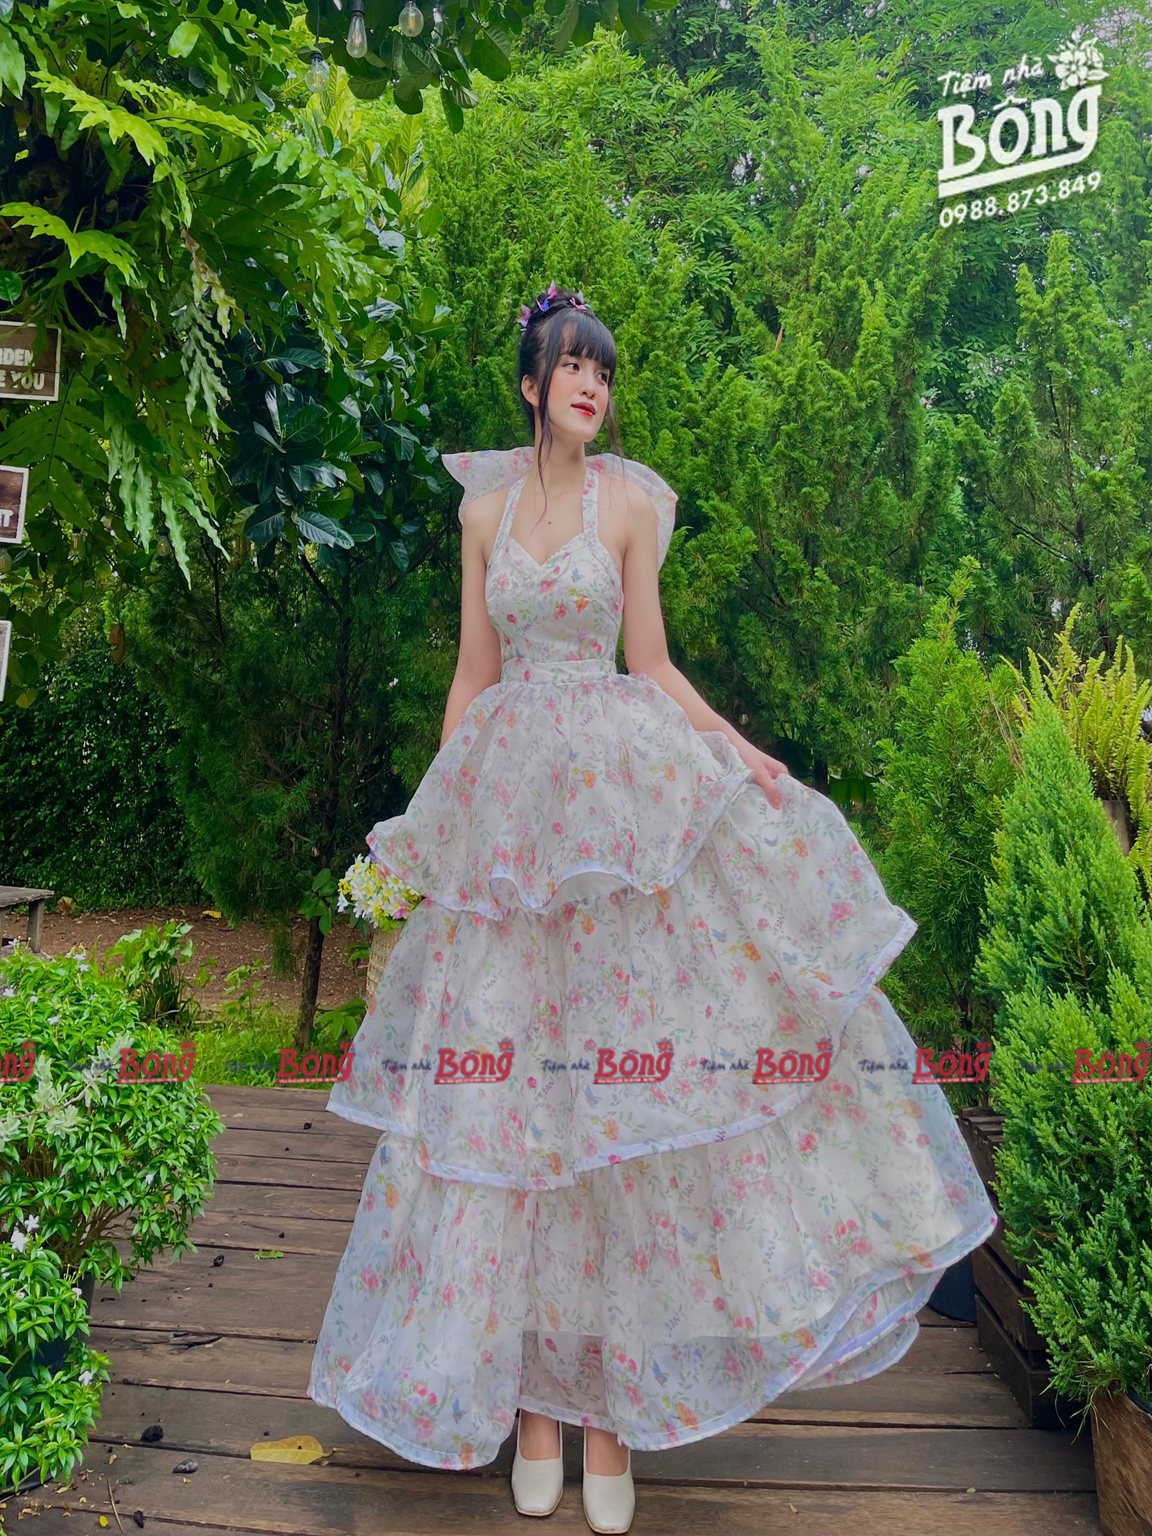 Đầm gắn nơ cổ vuông kiểu dáng hàn quốc -váy công chúa 2 lớp cực xinh dễ  thương ,váy tiểu thư điệu đà, VÁY BABYDOLL -THỜI TRANG 1989 | Lazada.vn